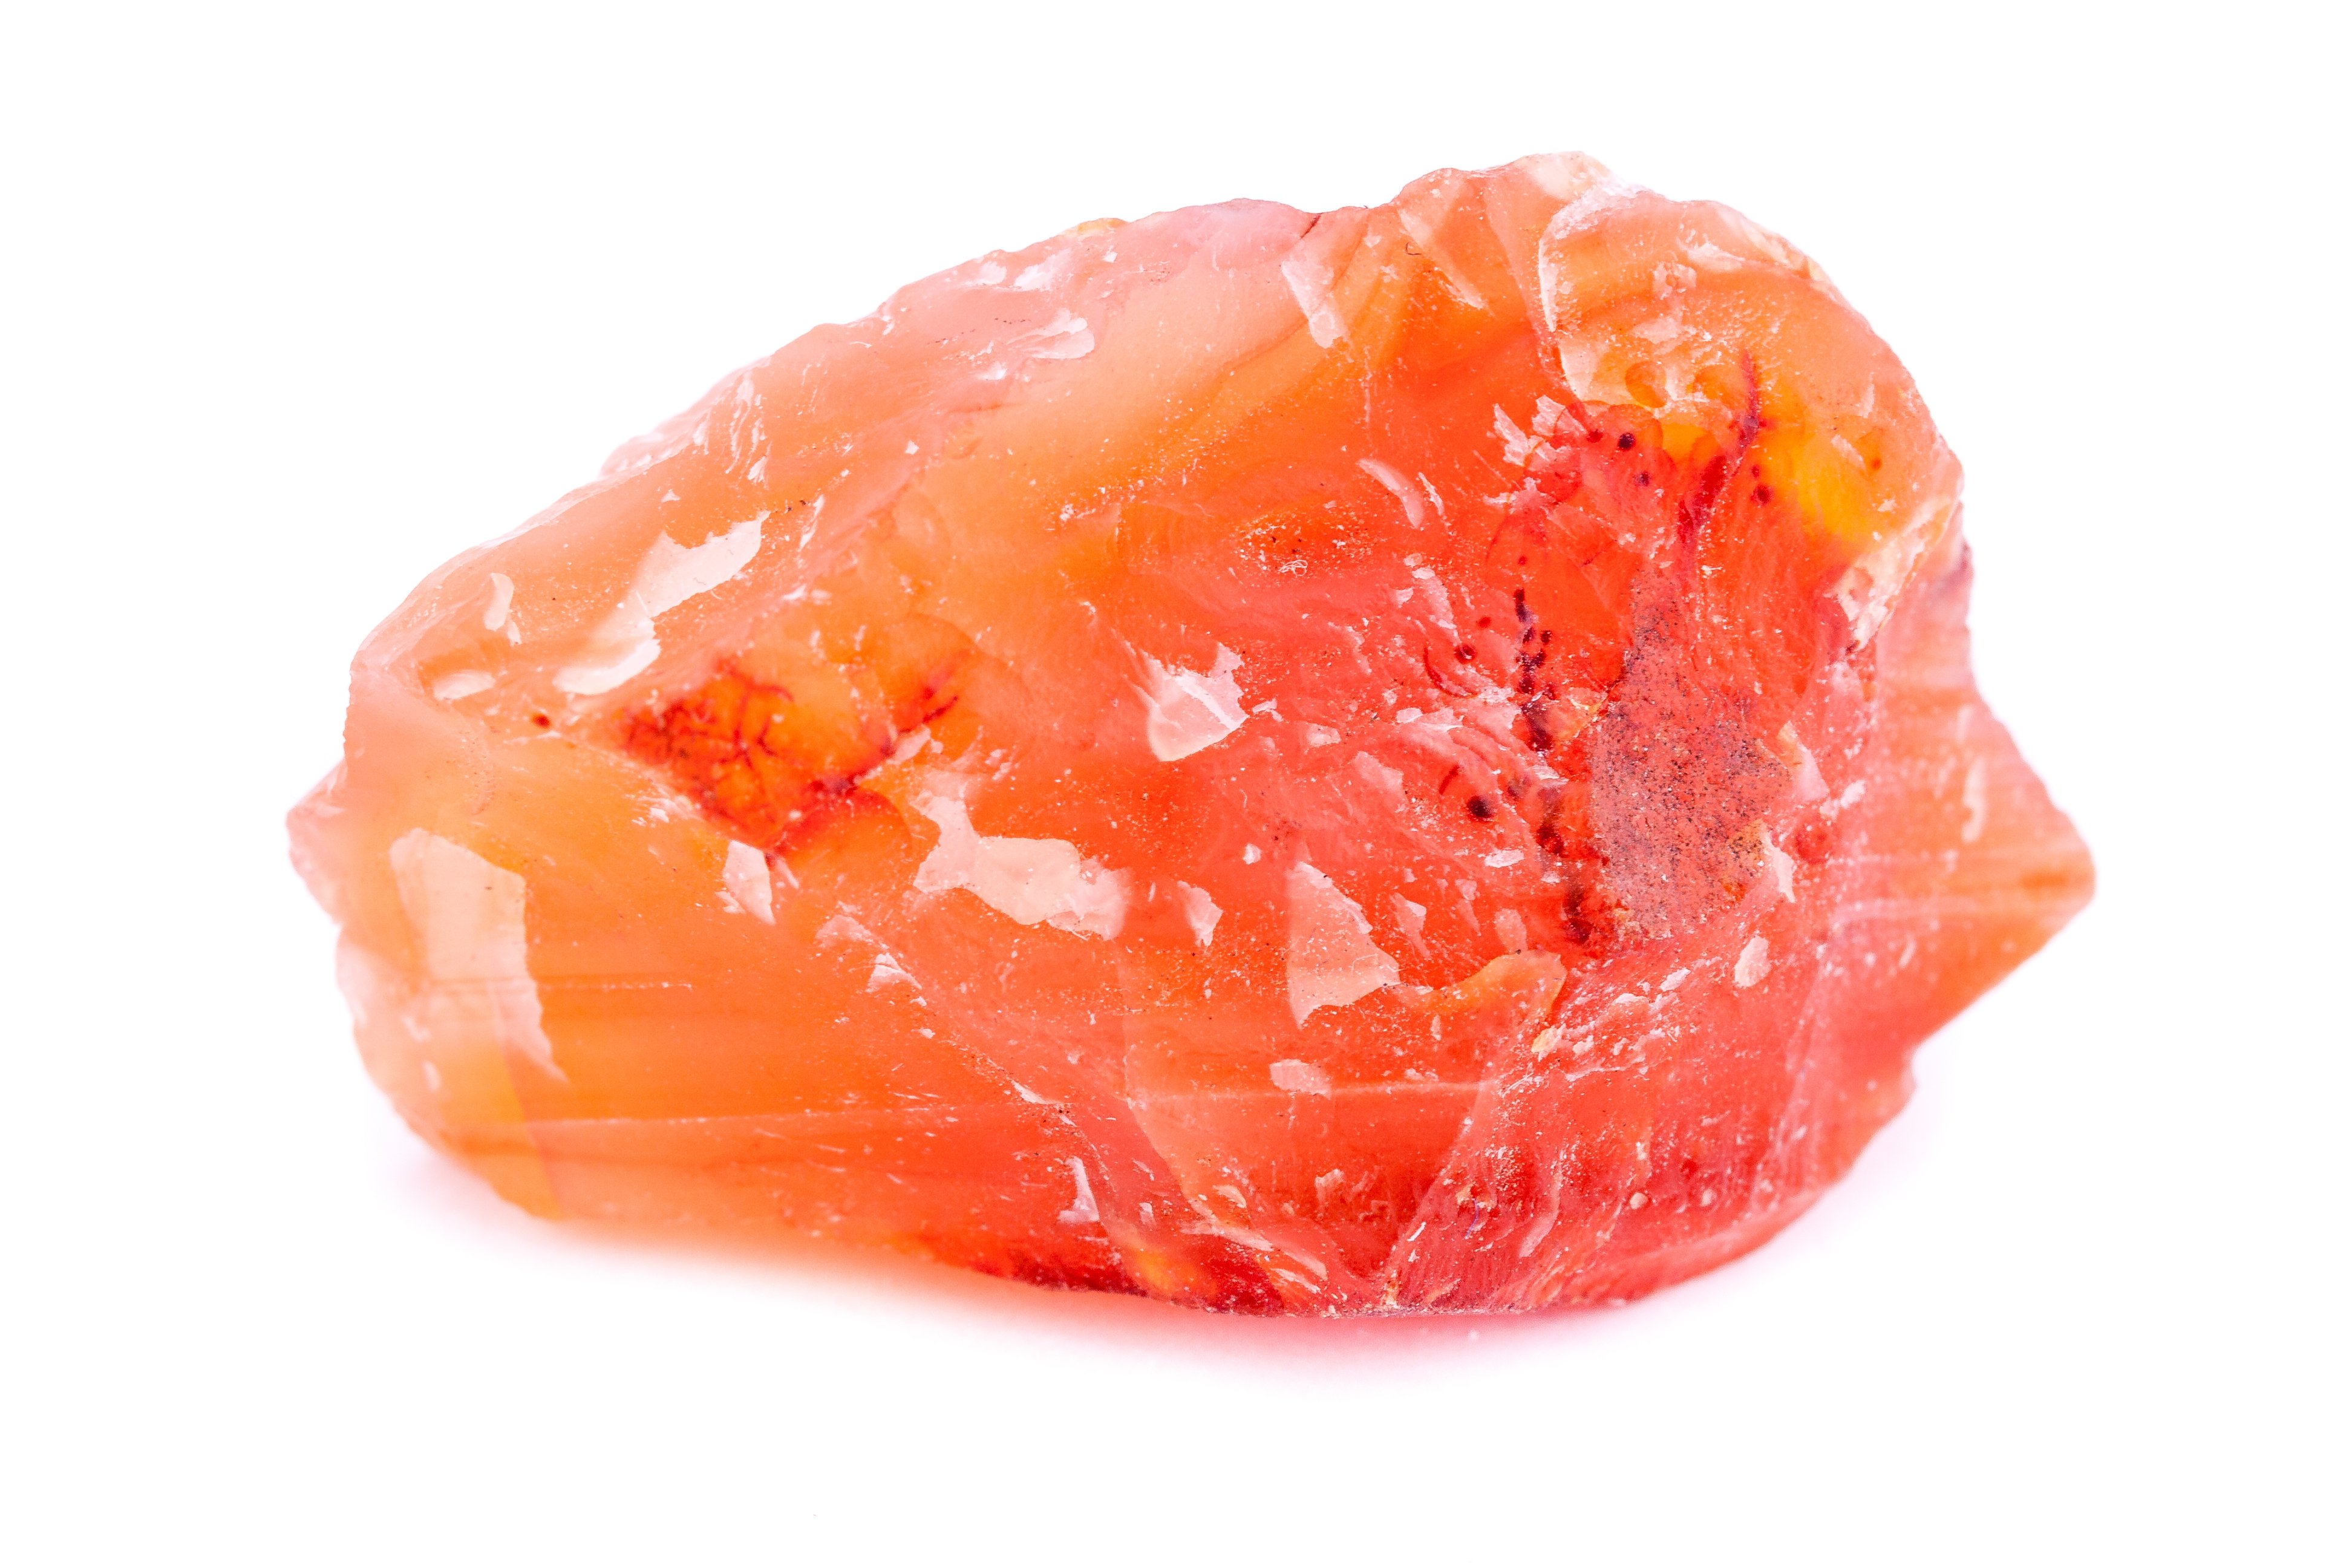 Raw carnelian crystal | Shutterstock 